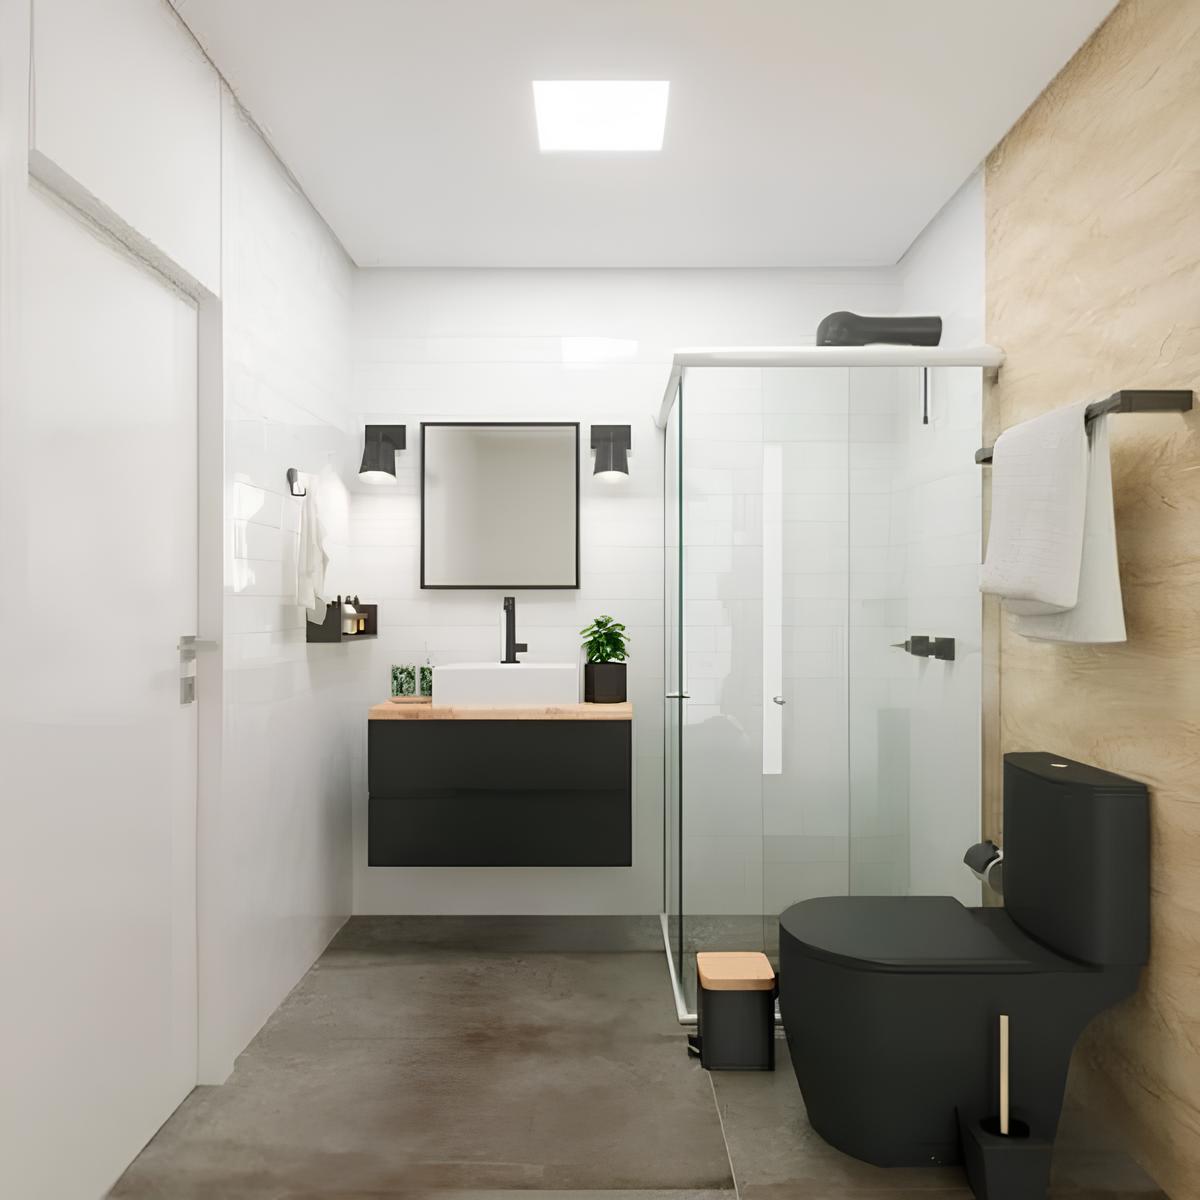 banheiro com arámrio e pia, um espelho, dois vasinhos de plantas decorativos em cima do armário, um box com chuveiro ao lado, e um vaso sanitário com caixa acoplada nas cores pretas, no teto um luminária embutida de LED.